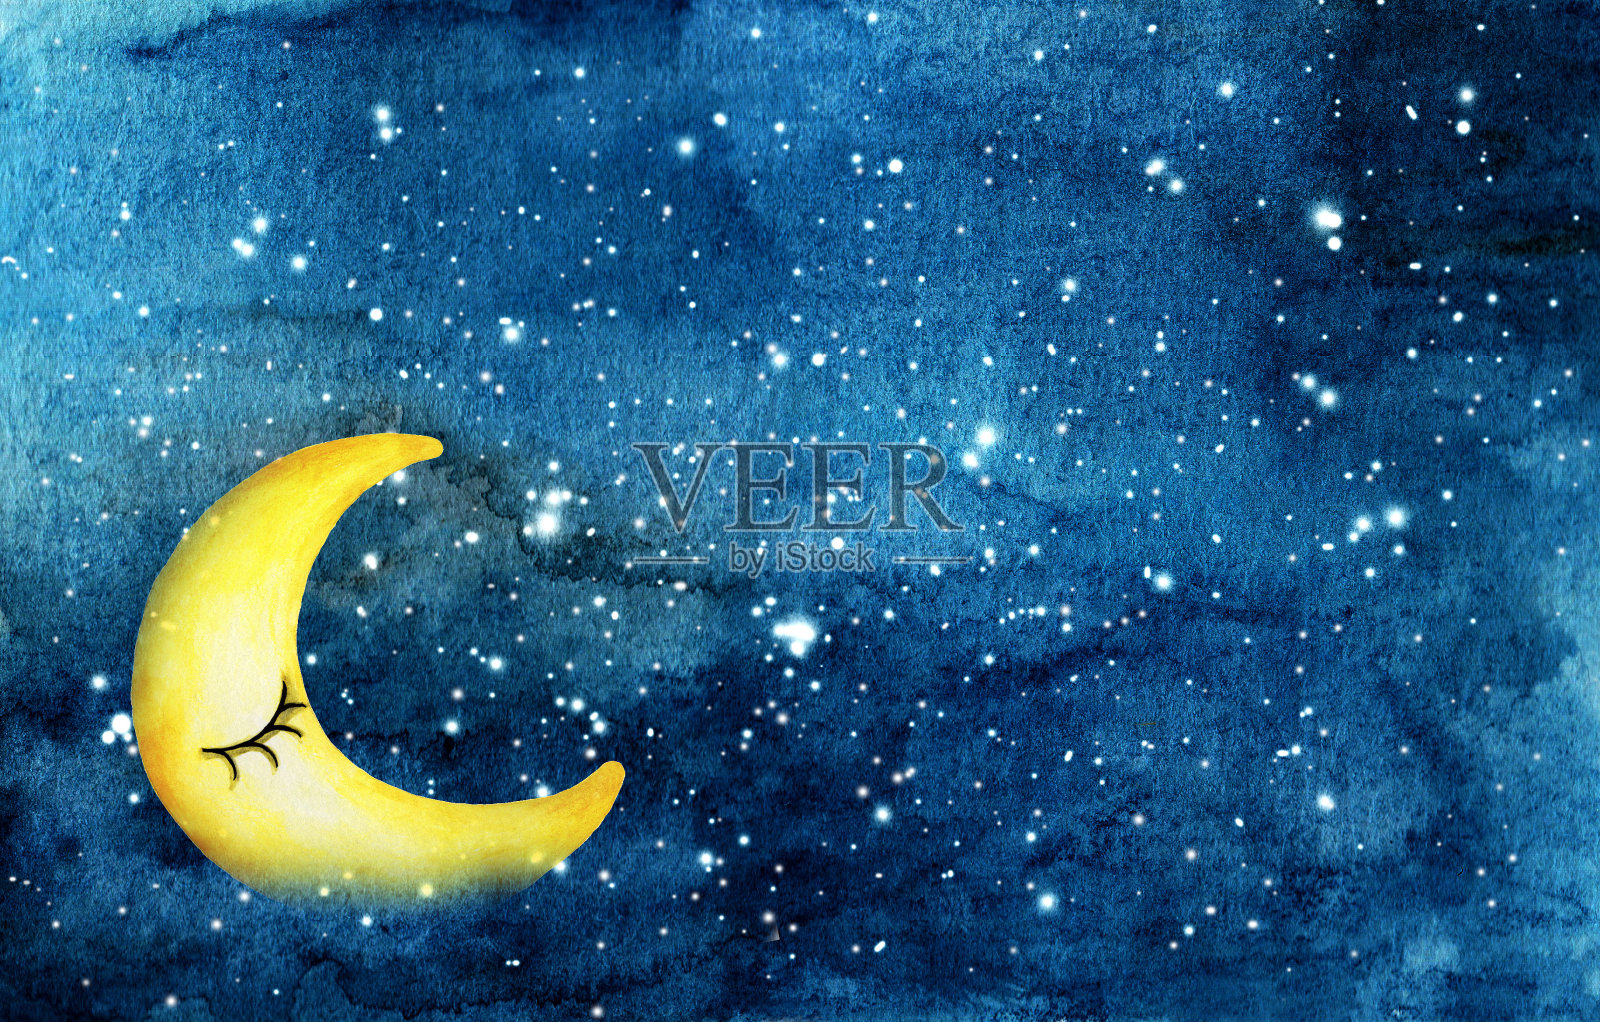 夜空与黄色新月和星星水彩抽象染色夜空背景插画图片素材